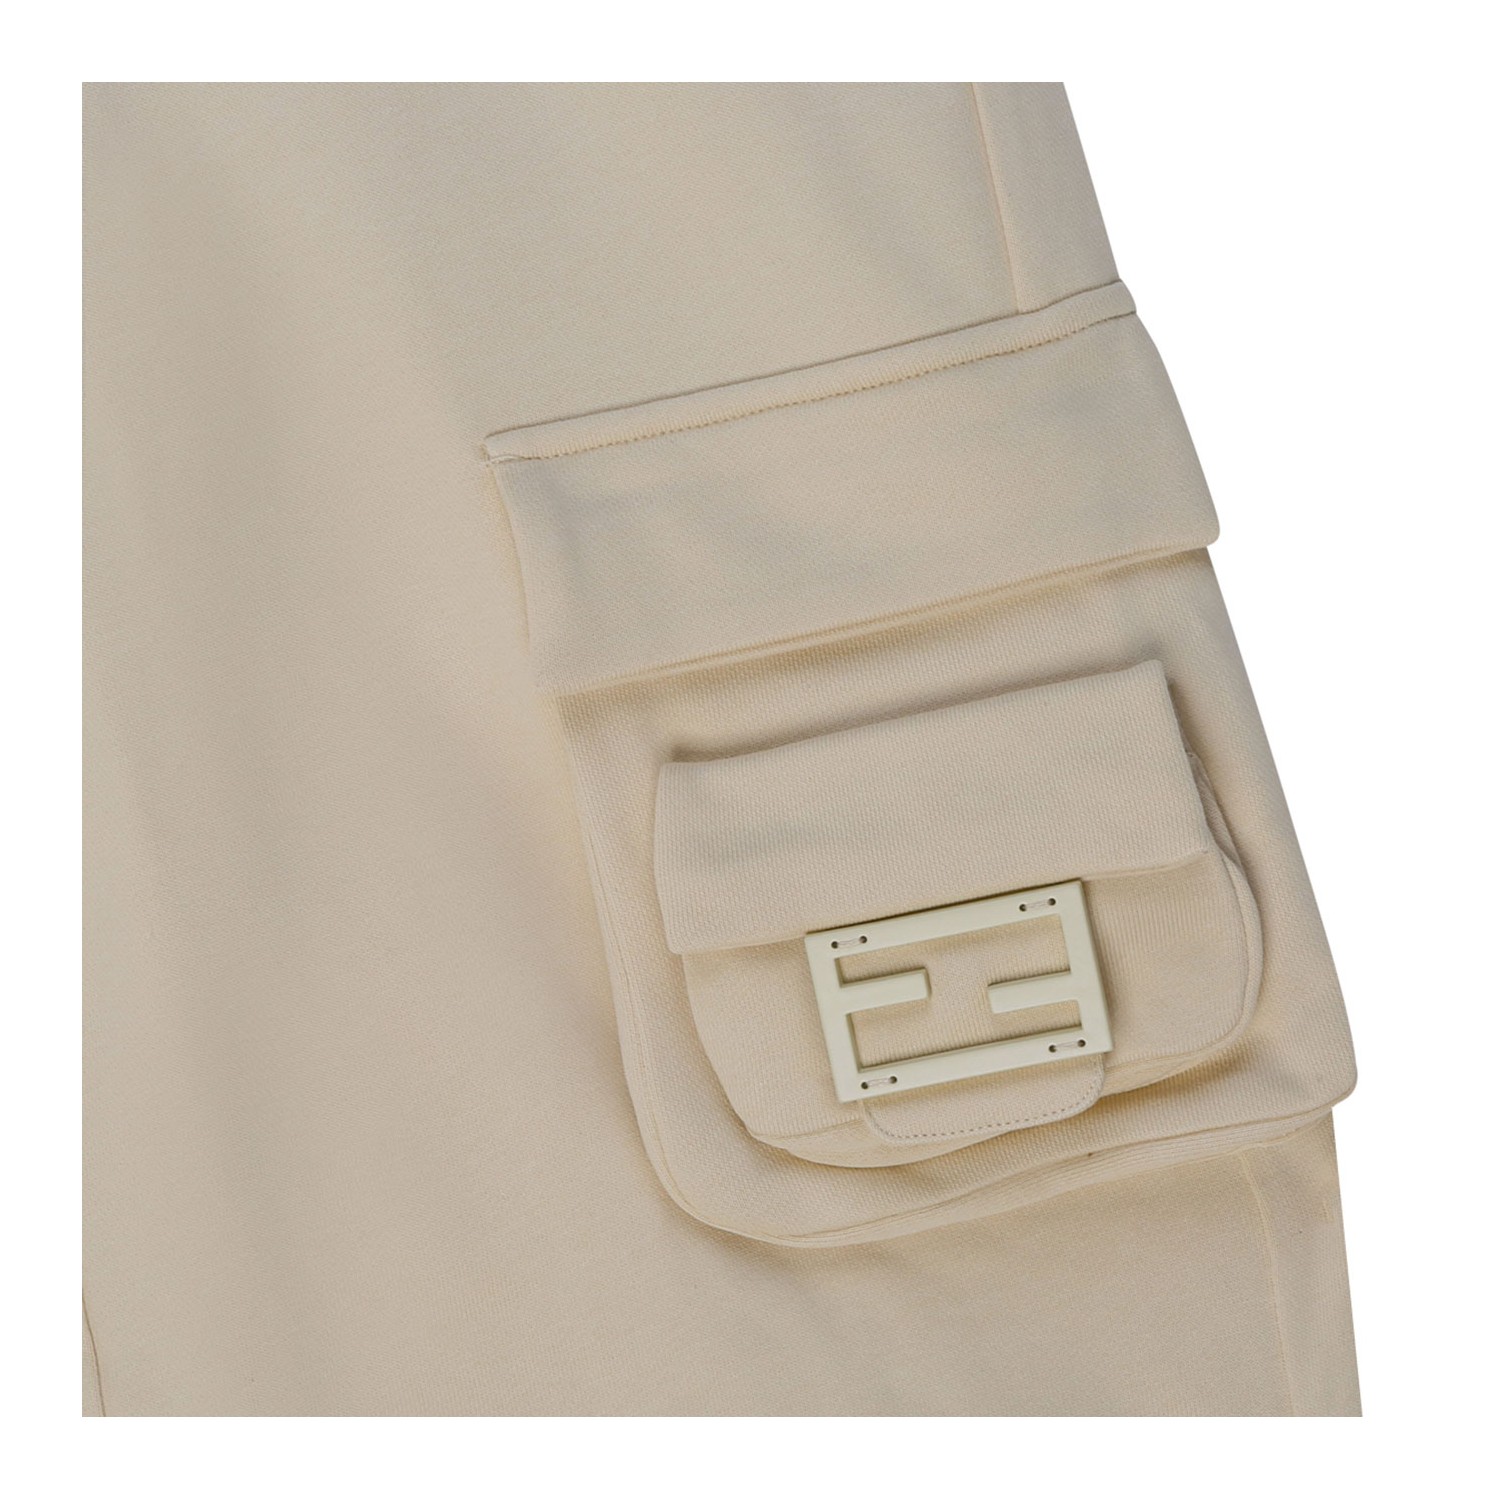 Trousers Fendi Beige size M International in Cotton - 40492930